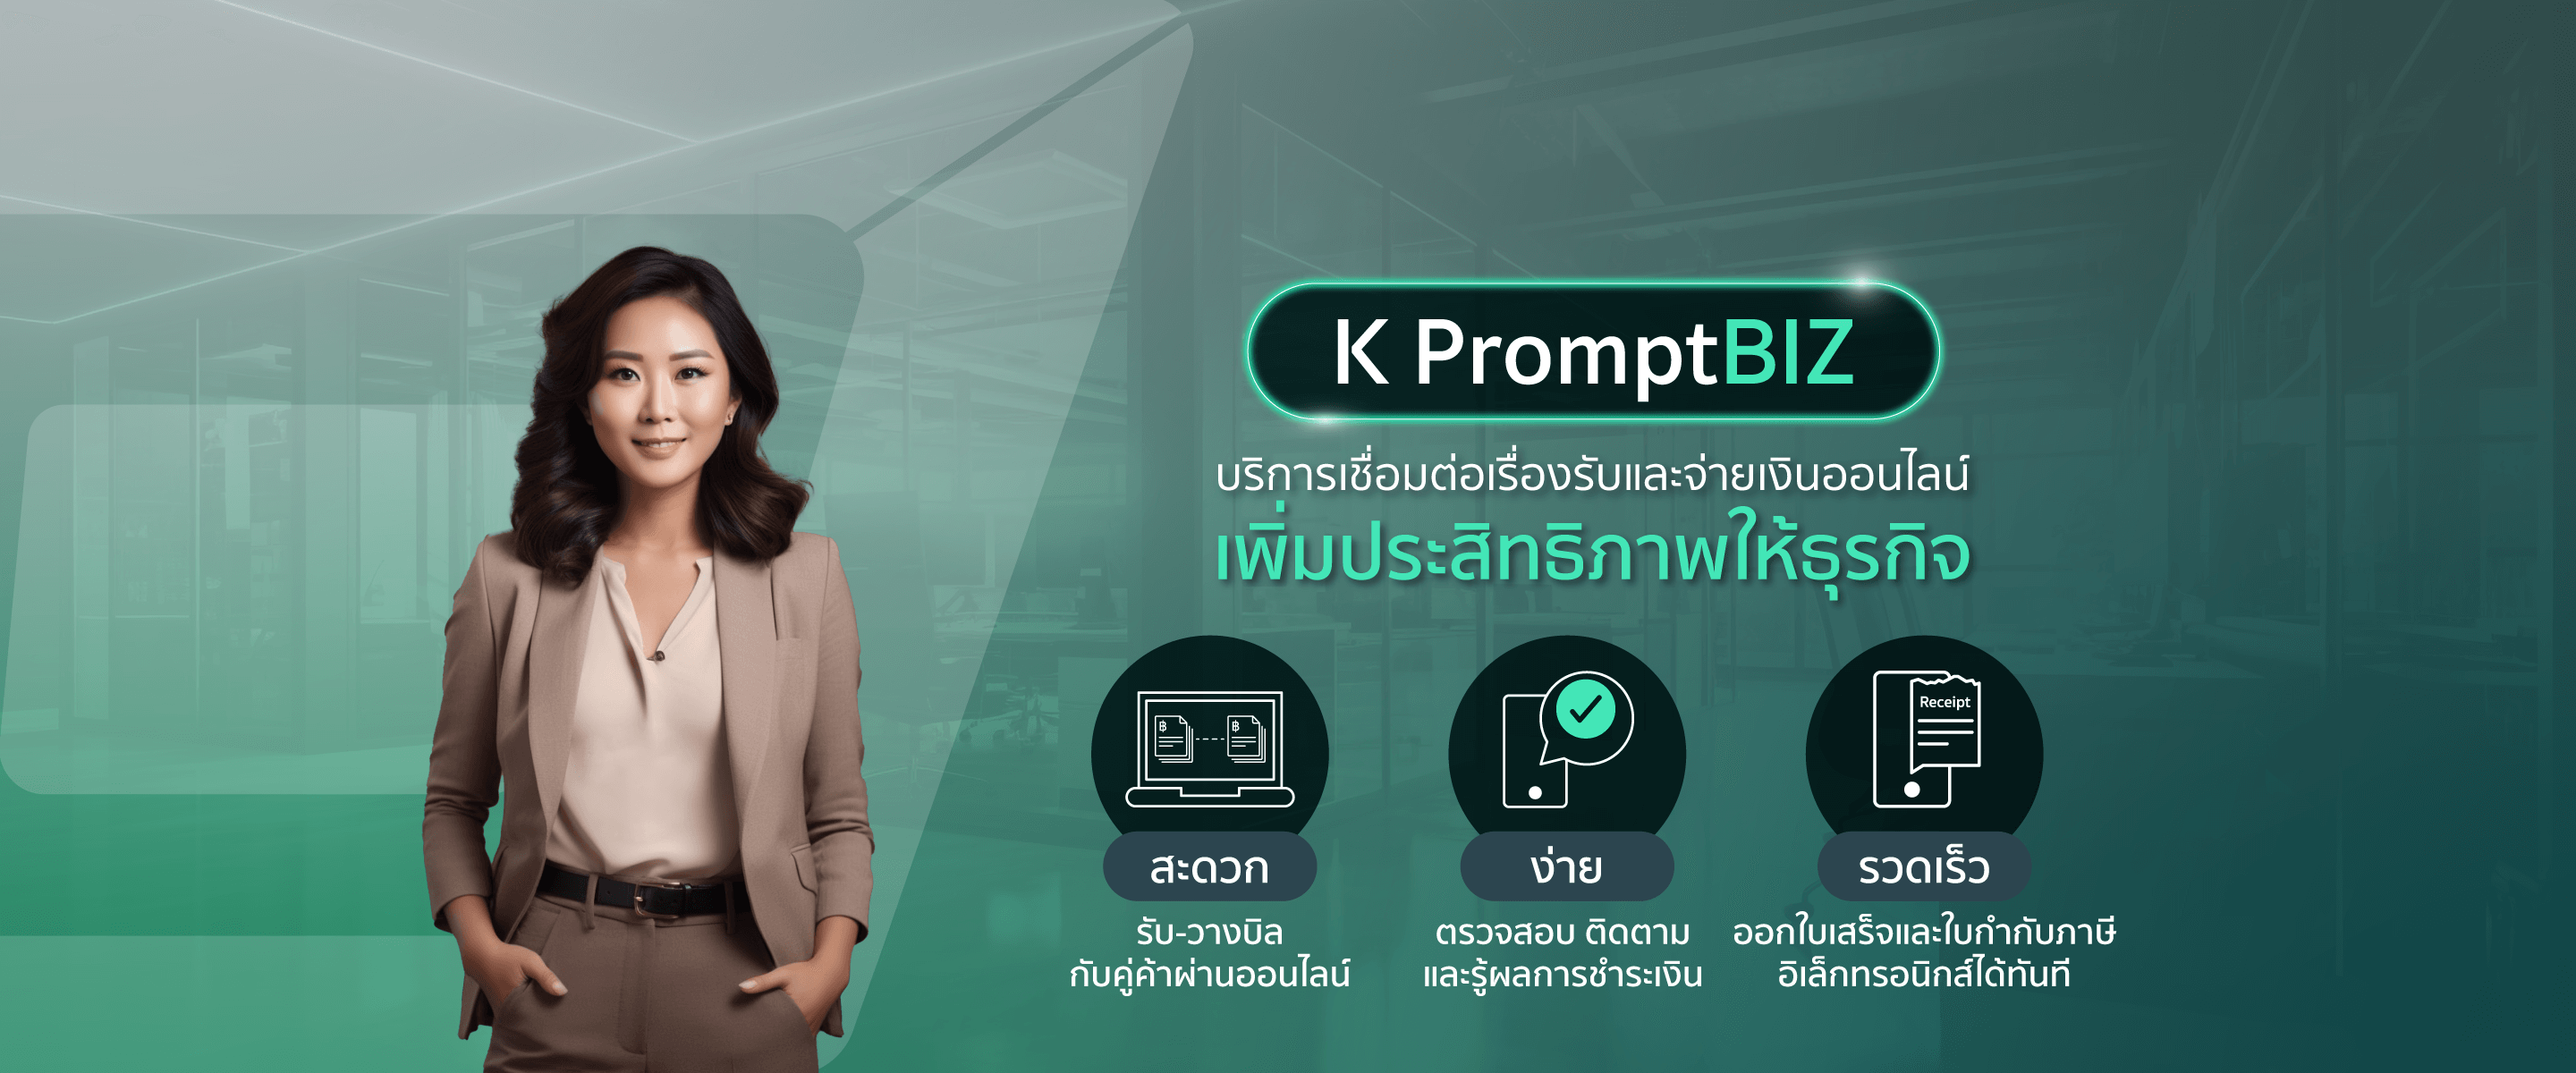 K PromptBIZ พร้อมบิซ เชื่อมโยงข้อมูลธุรกรรมการค้าและการชำระเงินของธุรกิจในรูปแบบดิจิทัลที่สามารถข้ามธนาคารได้อย่างครบวงจร